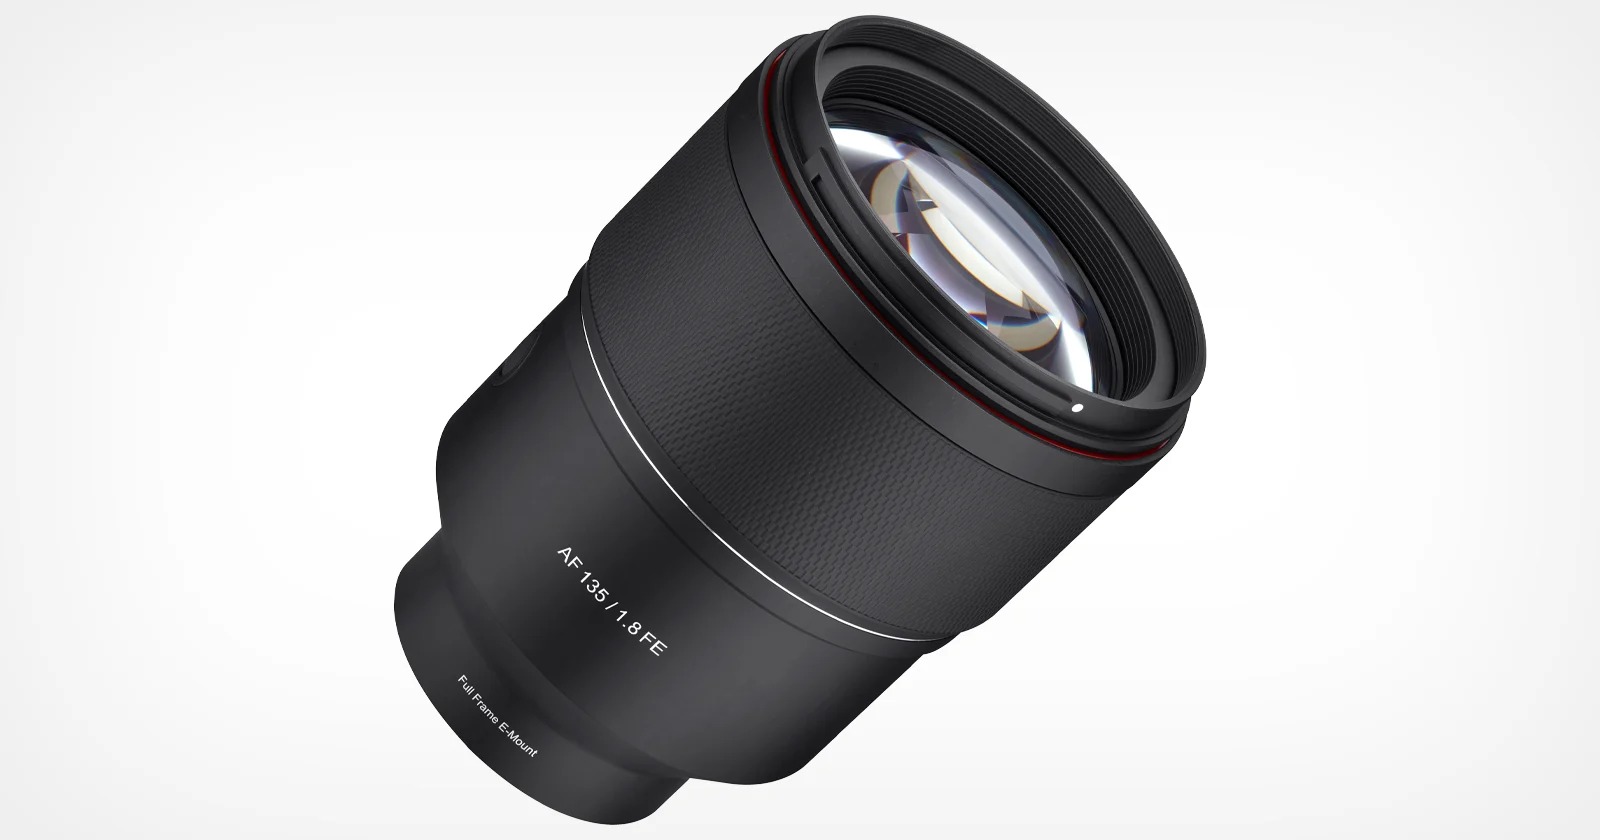 Samyang ra mắt ống kính AF 135mm F1.8 dành cho máy ảnh Sony ngàm E